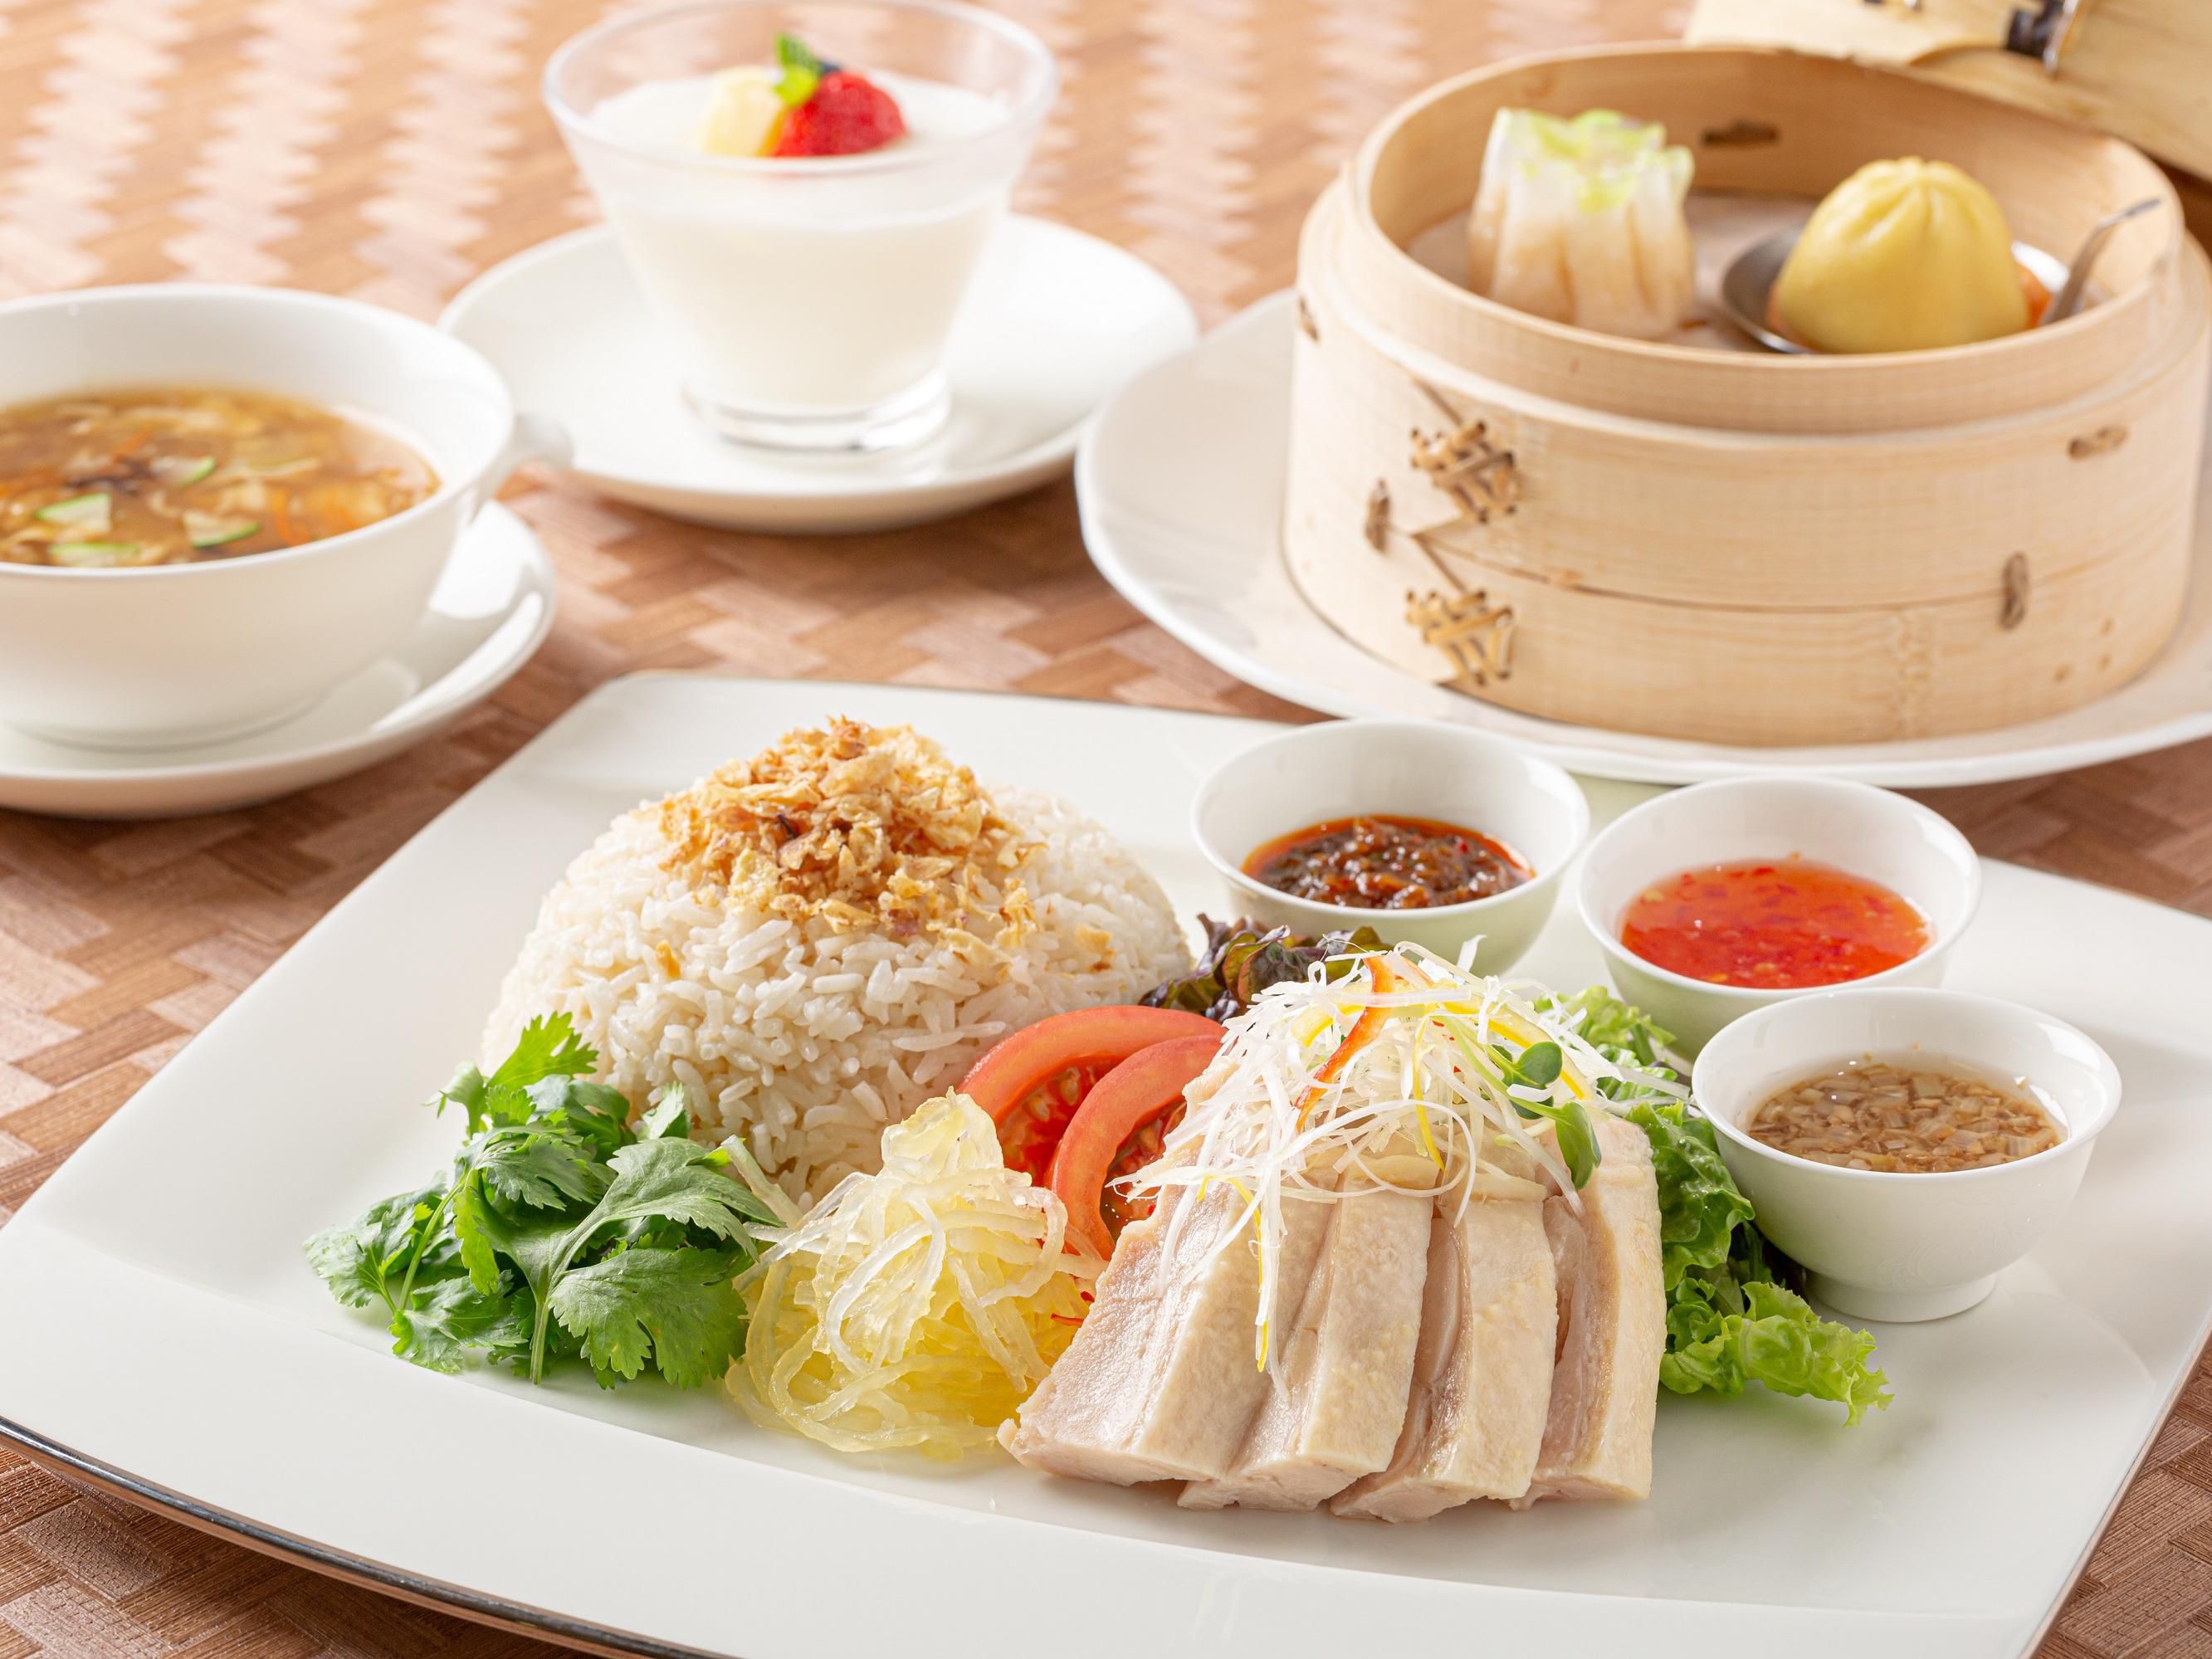 Hainanese Chicken Rice Lunch Set